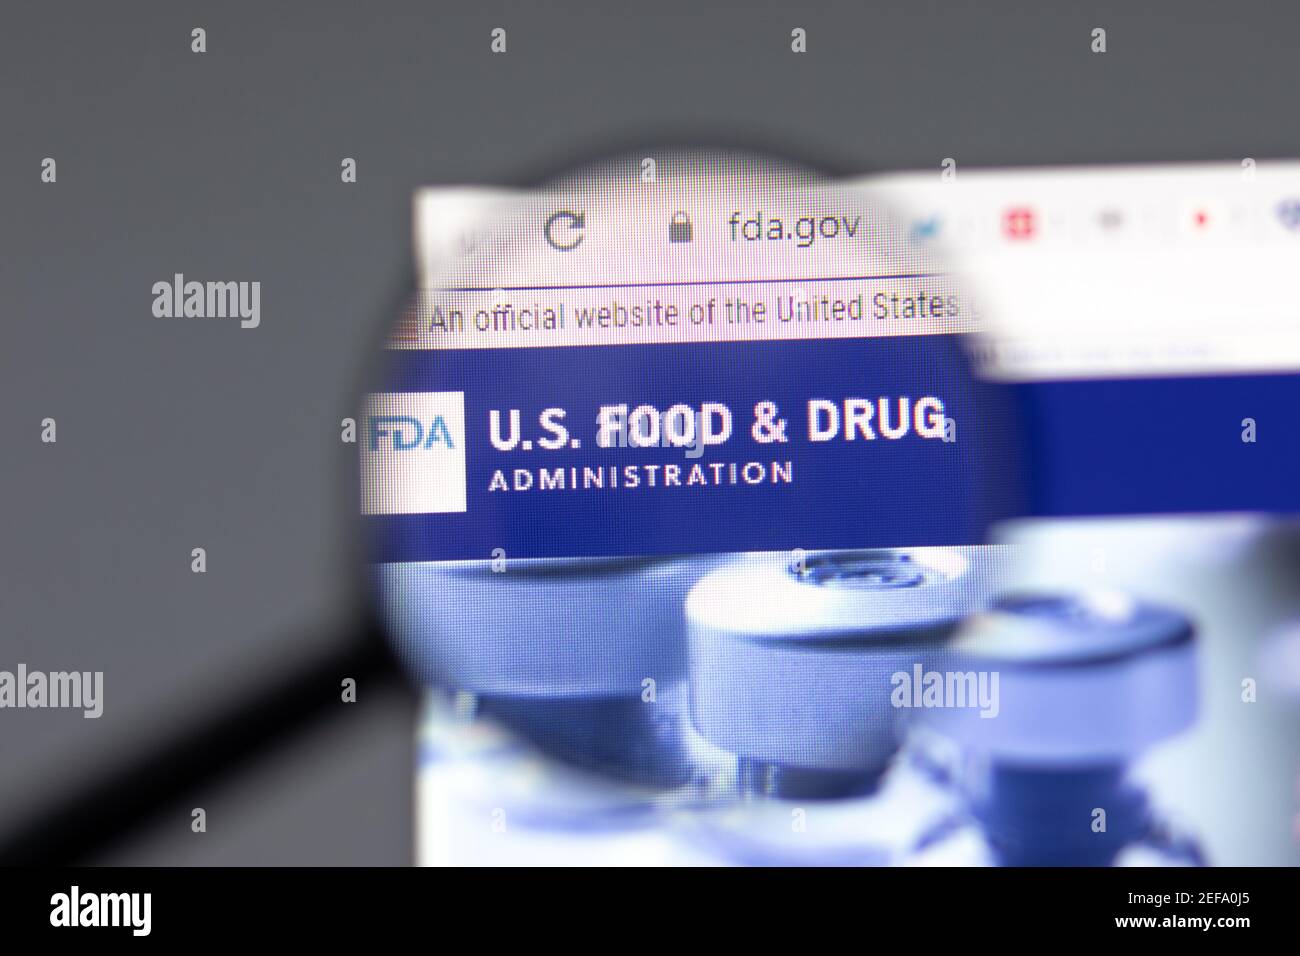 Nueva York, EE.UU. - 15 de febrero de 2021: FDA EE.UU. Food and Drug sitio web en el navegador con el logotipo de la empresa, editorial ilustrativa Foto de stock